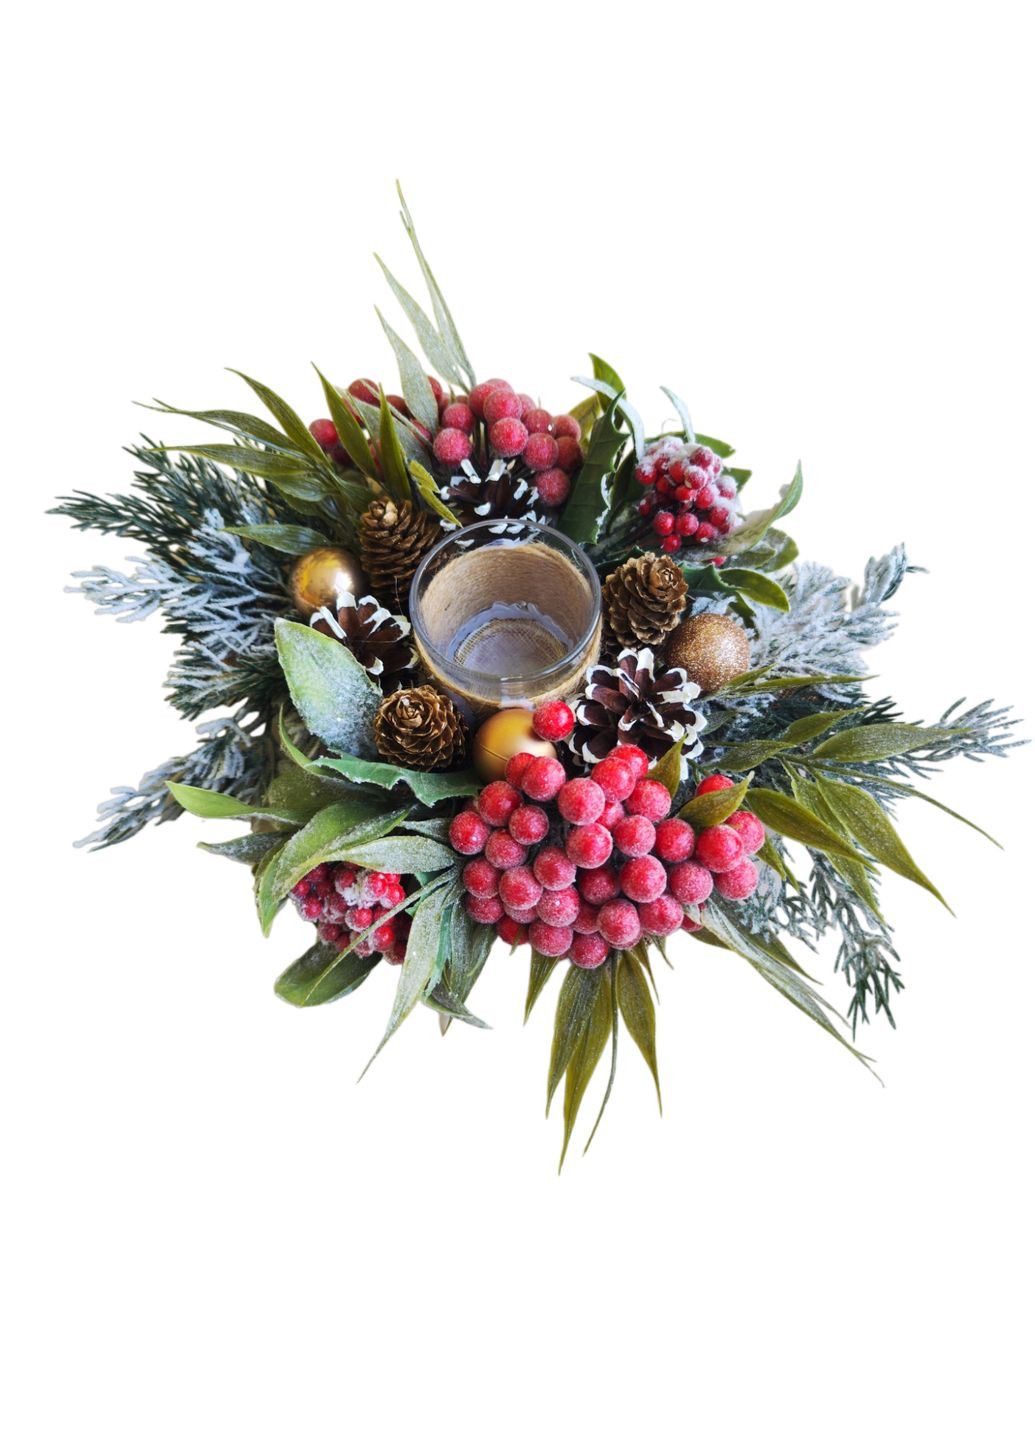 Рождественский декор из натуральных шишек. Набор венок и подсвечник рябины. Ksenija Vitali (263063887)